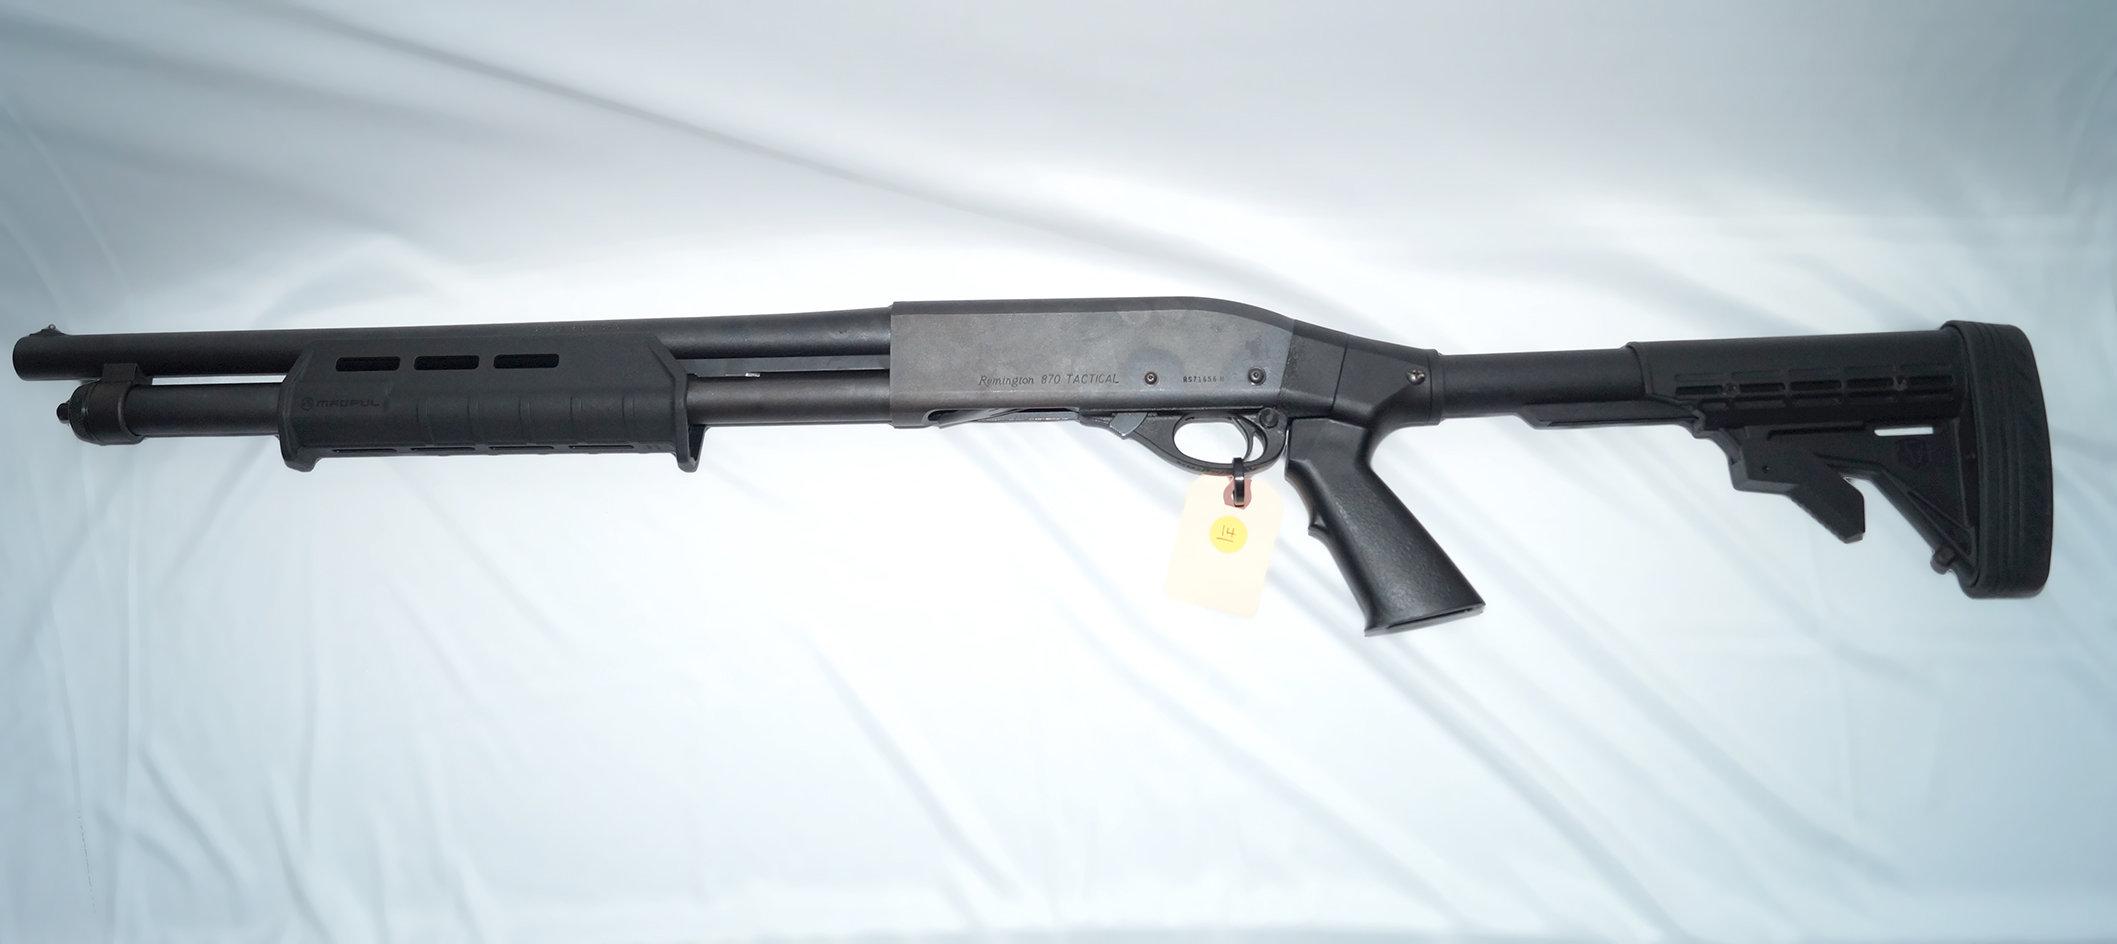 Remington 870 Tactical--12 Gauge Pump Action Shotgun--ATI Collapsible Stock--Magpul Front Furniture